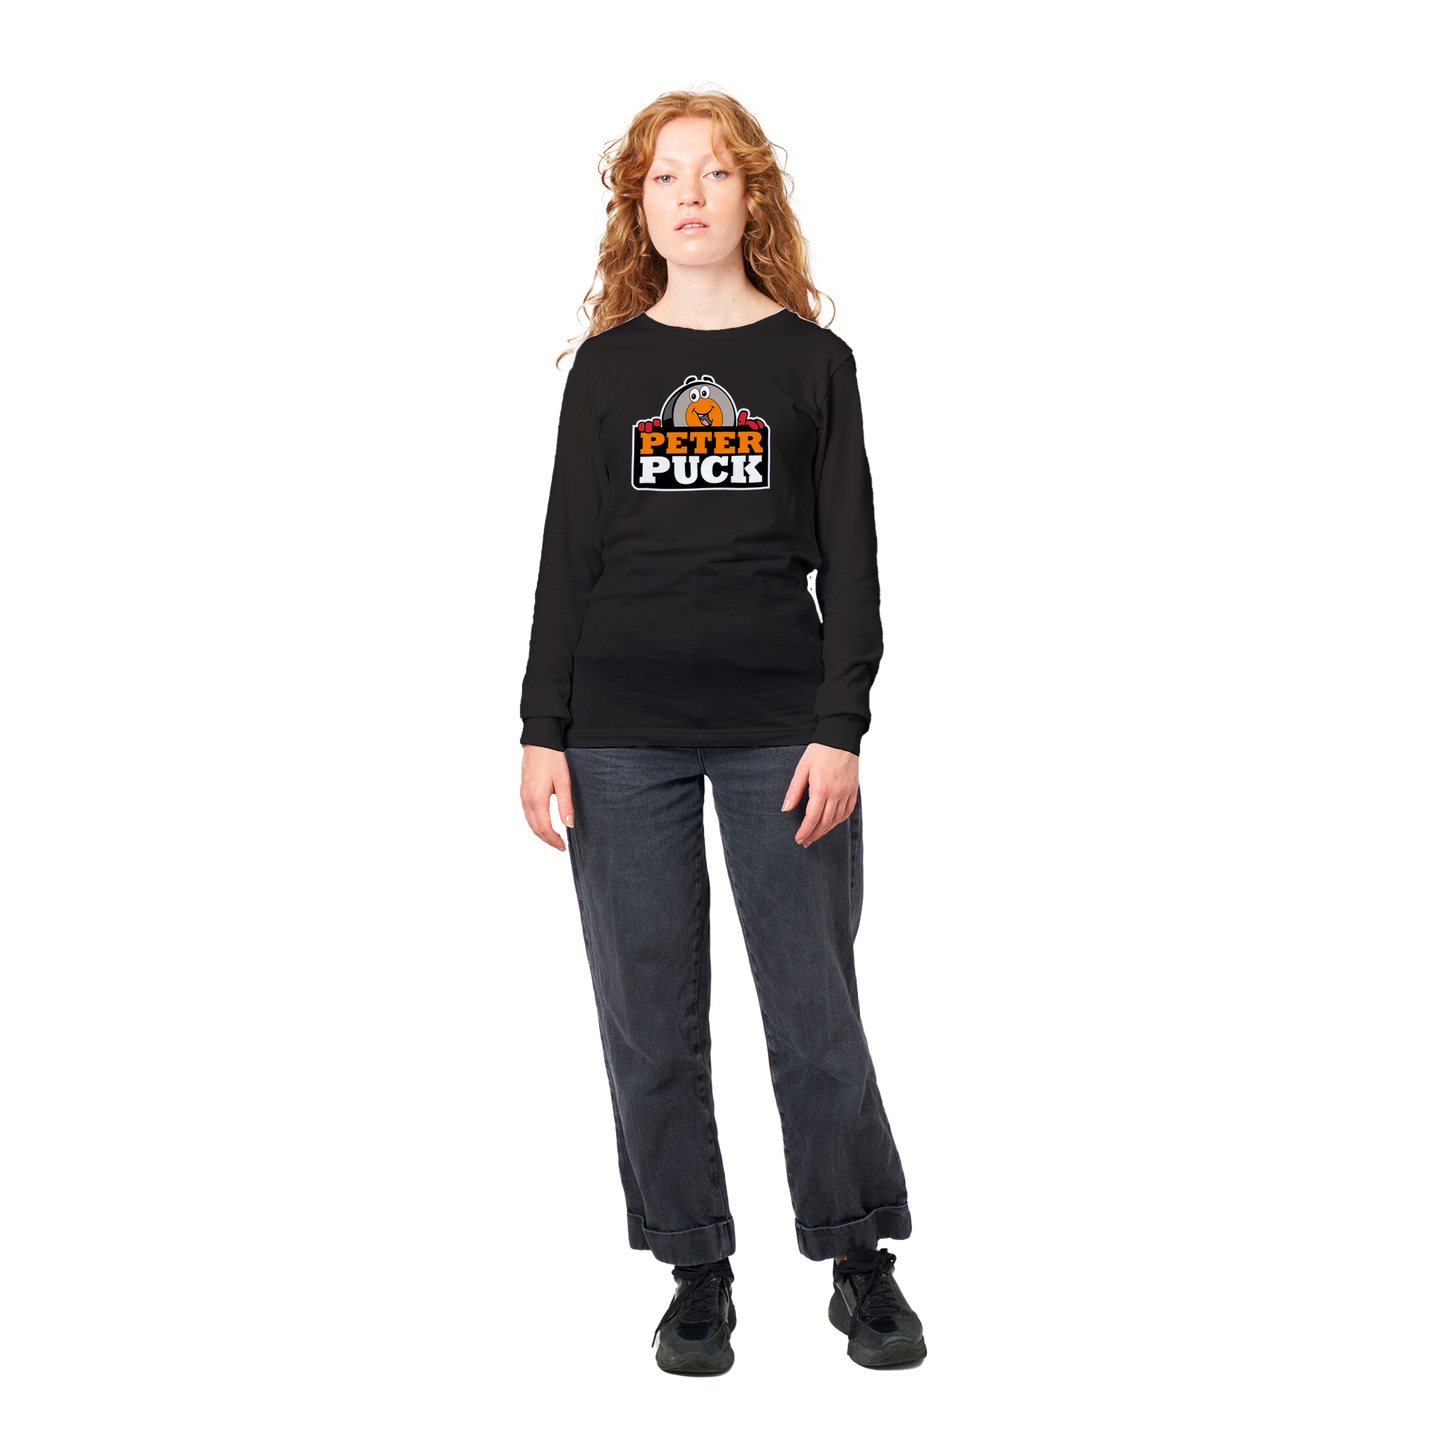 Peter Puck Peek Premium Mens Longsleeve T-shirt